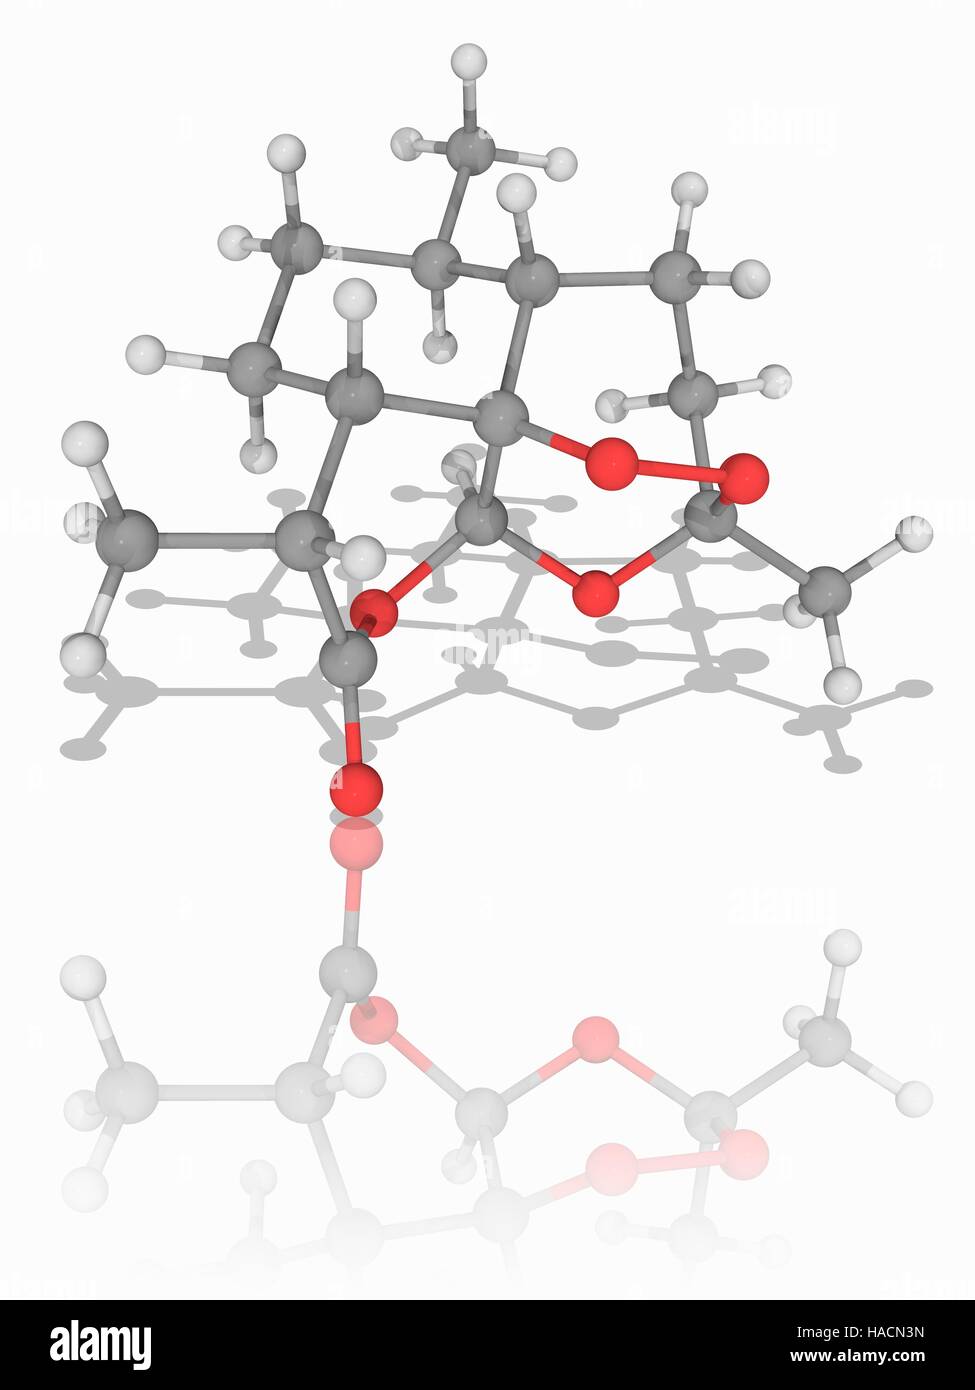 Artemisinin. Molekülmodell des Malaria-Medikament Artemisinin (C15. H22. O5). Standard Malaria-Behandlungen beinhalten dieses Medikament und sind bekannt als Artemisinin-Kombinationstherapien (Apg). Atome als Kugeln dargestellt werden und sind farblich gekennzeichnet: Kohlenstoff (grau), Wasserstoff (weiß) und Sauerstoff (rot). Abbildung. Stockfoto